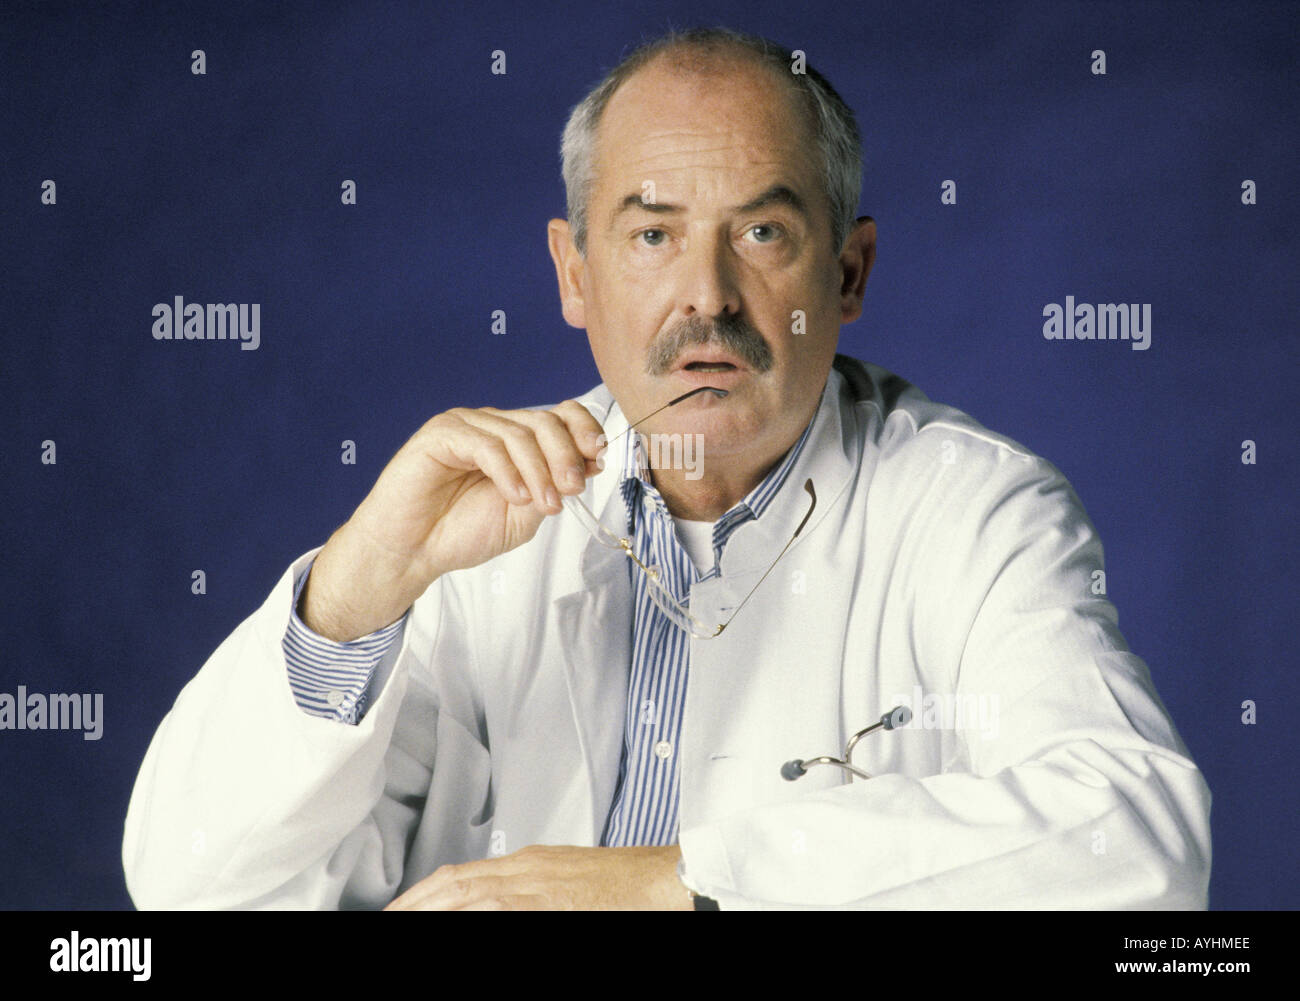 Arzt mit ratlosem Gesichtsausdruck Stock Photo